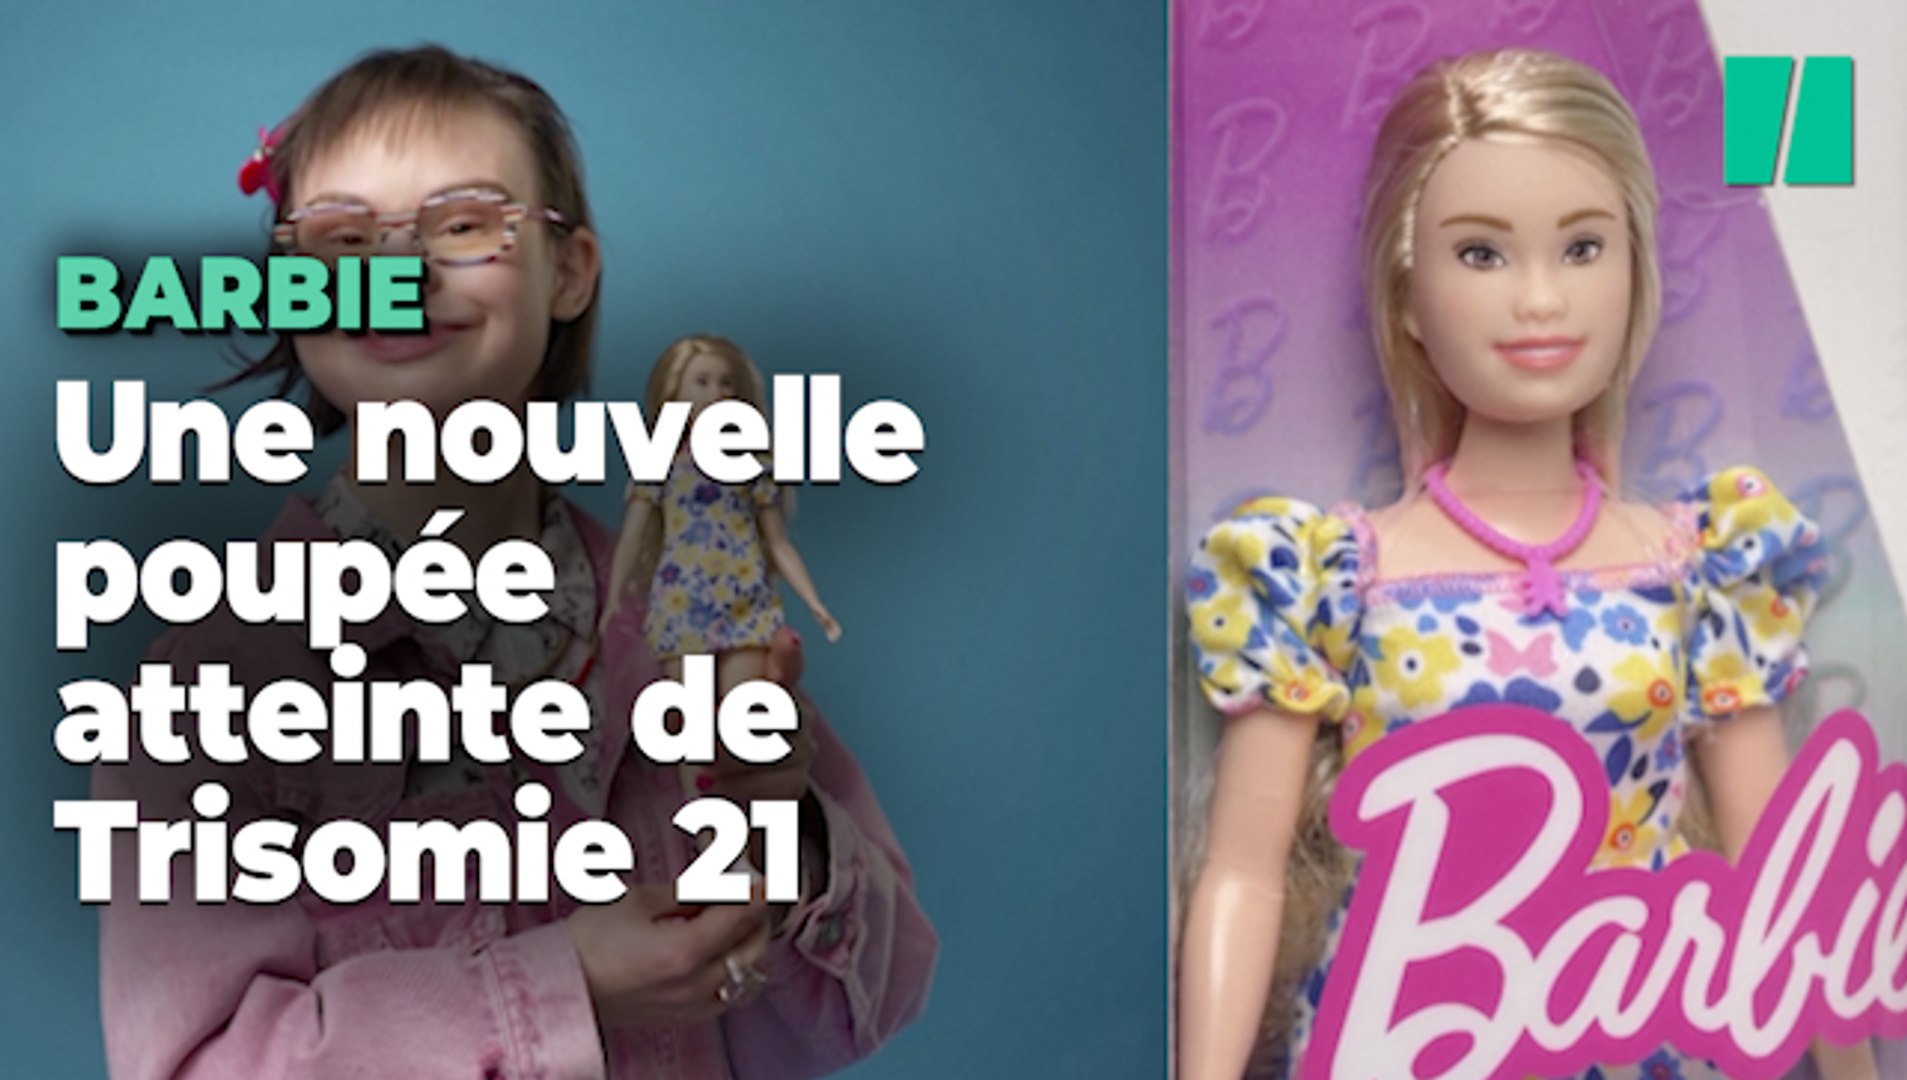 Barbie lance sa première poupée atteinte de Trisomie 21 - Vidéo Dailymotion